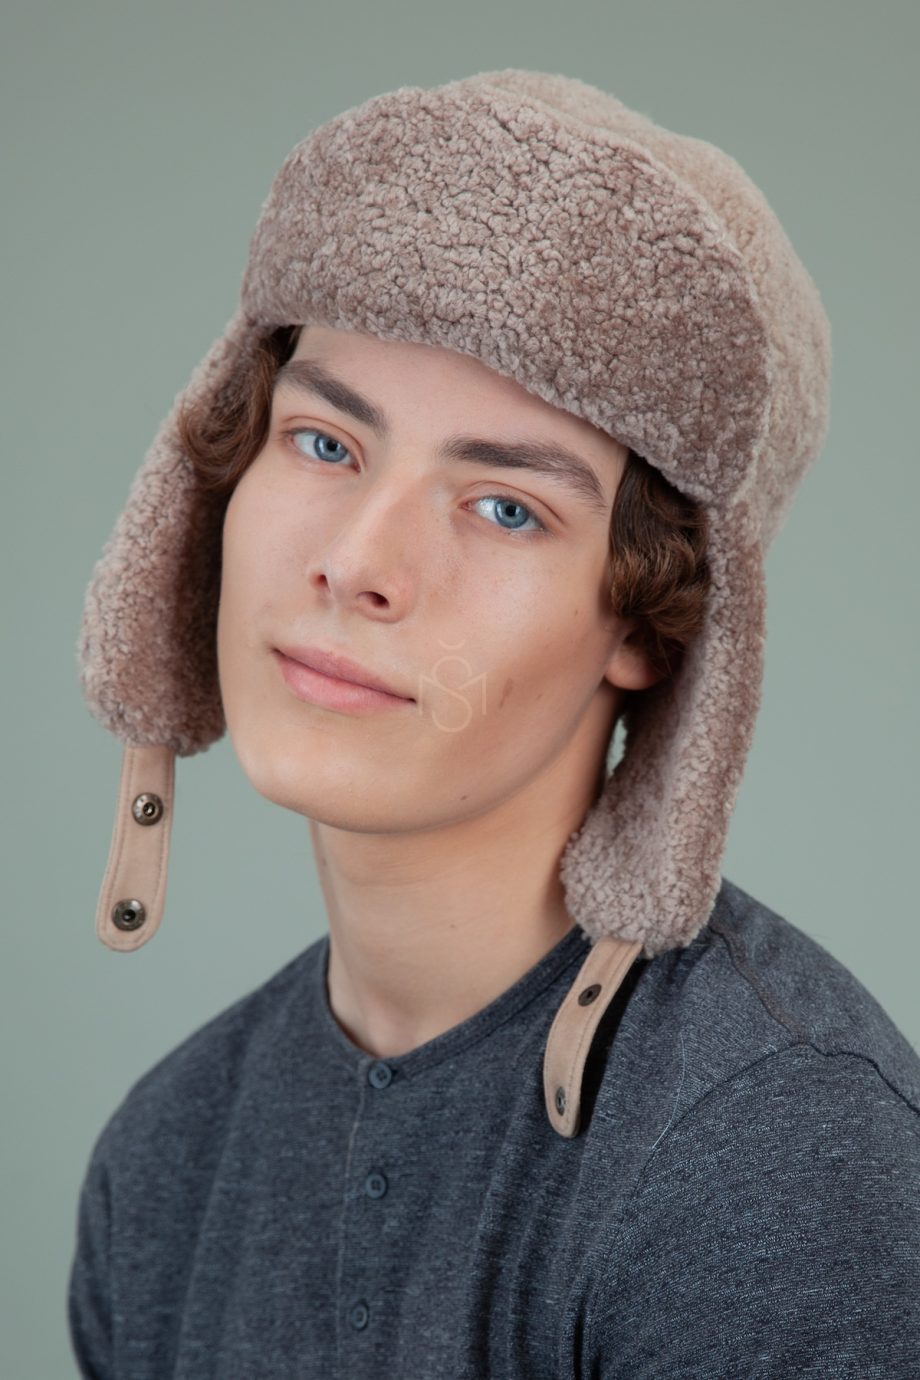 biezinio avikailio kailio kepure su susegamomis ausimis